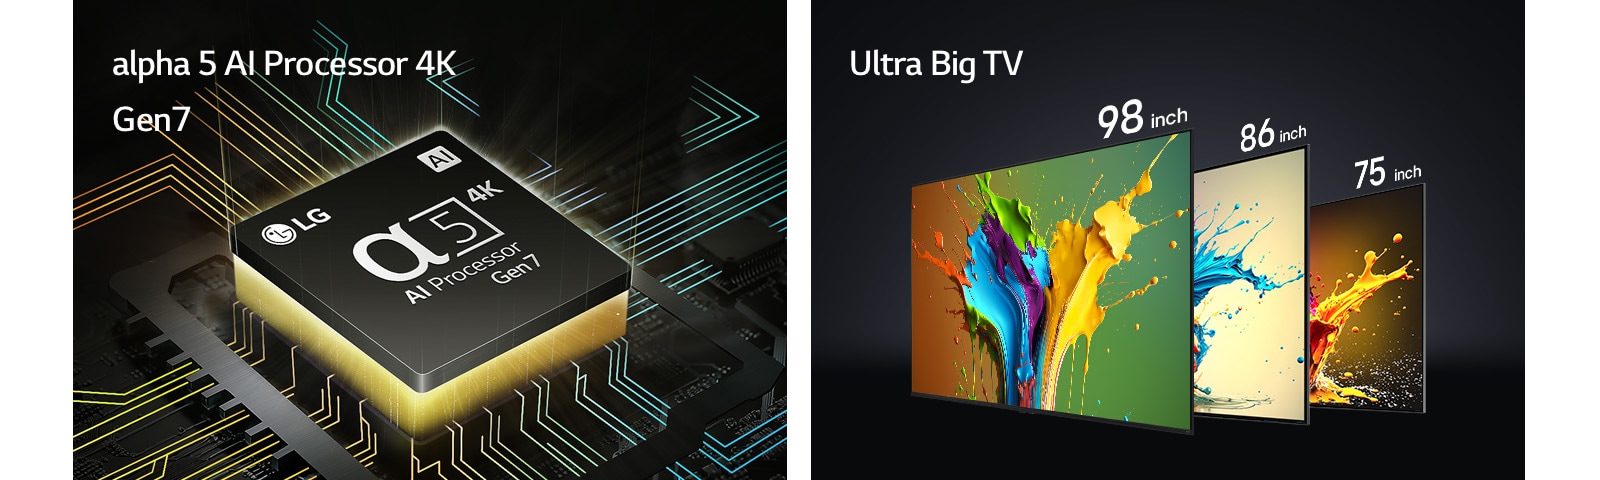 Der alpha 5 KI-Prozessor 4K Gen7 wird mit einem gelbfarbenen Licht gezeigt, das von der Unterseite ausgeht. LG-QNED89-, QNED90- und QNED99-Fernseher werden in der Reihenfolge von links nach rechts gezeigt. Jeder Fernseher zeigt bunte Farbtupfer und die Worte „Ultra Big TV“ sind über den Fernsehern zu sehen.	